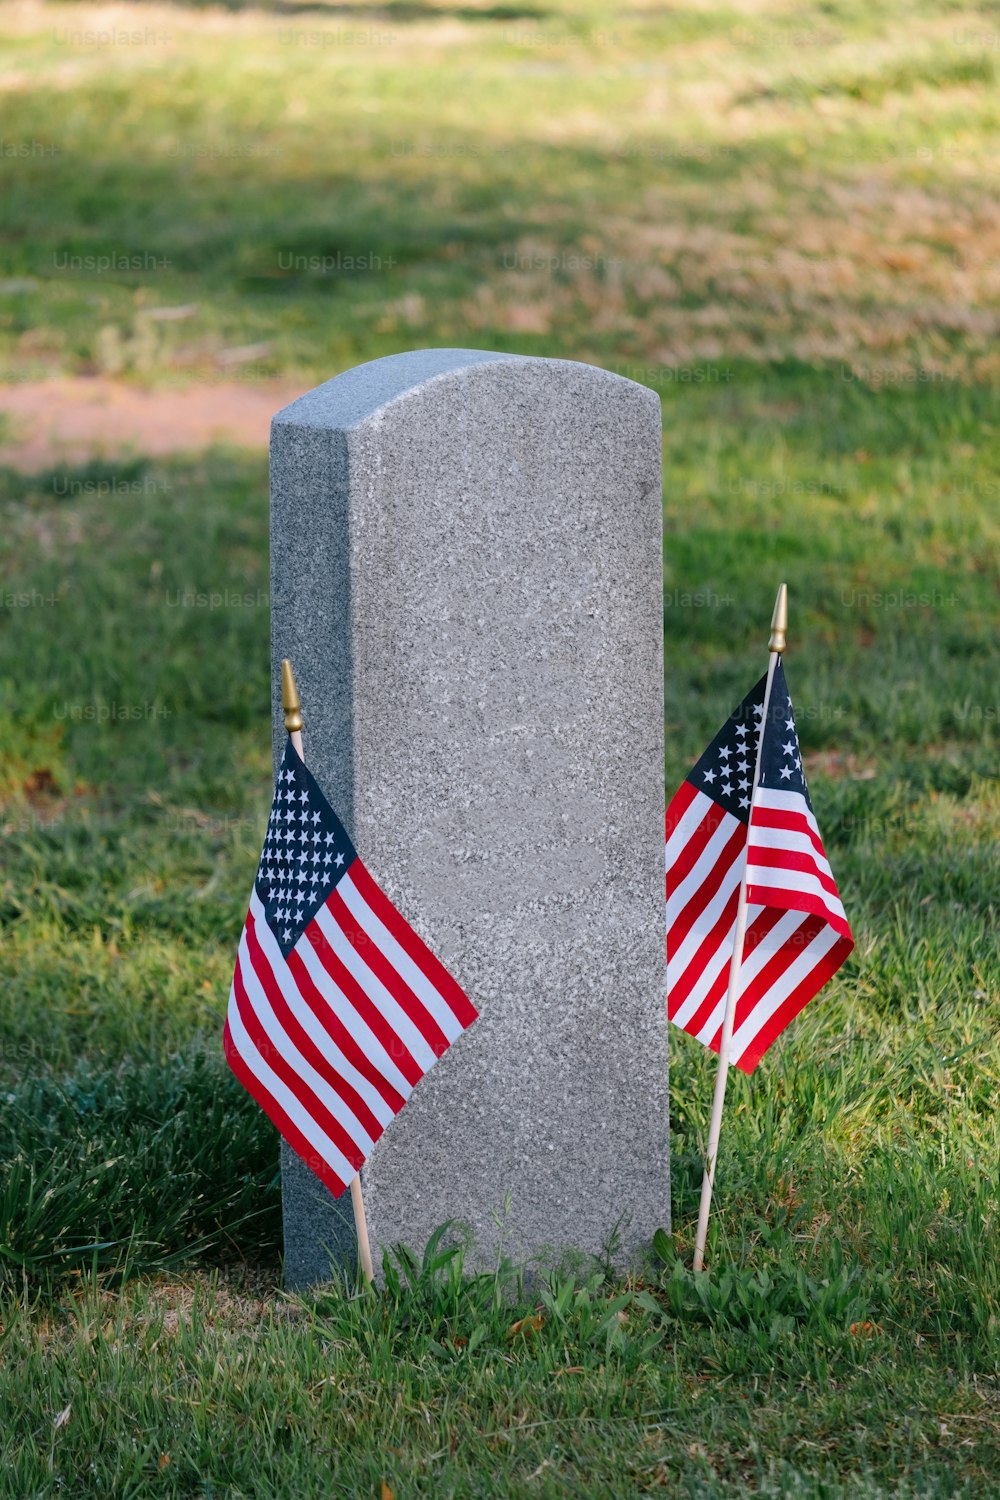 무덤 옆에 두 개의 미국 국기가 놓여 있습니다